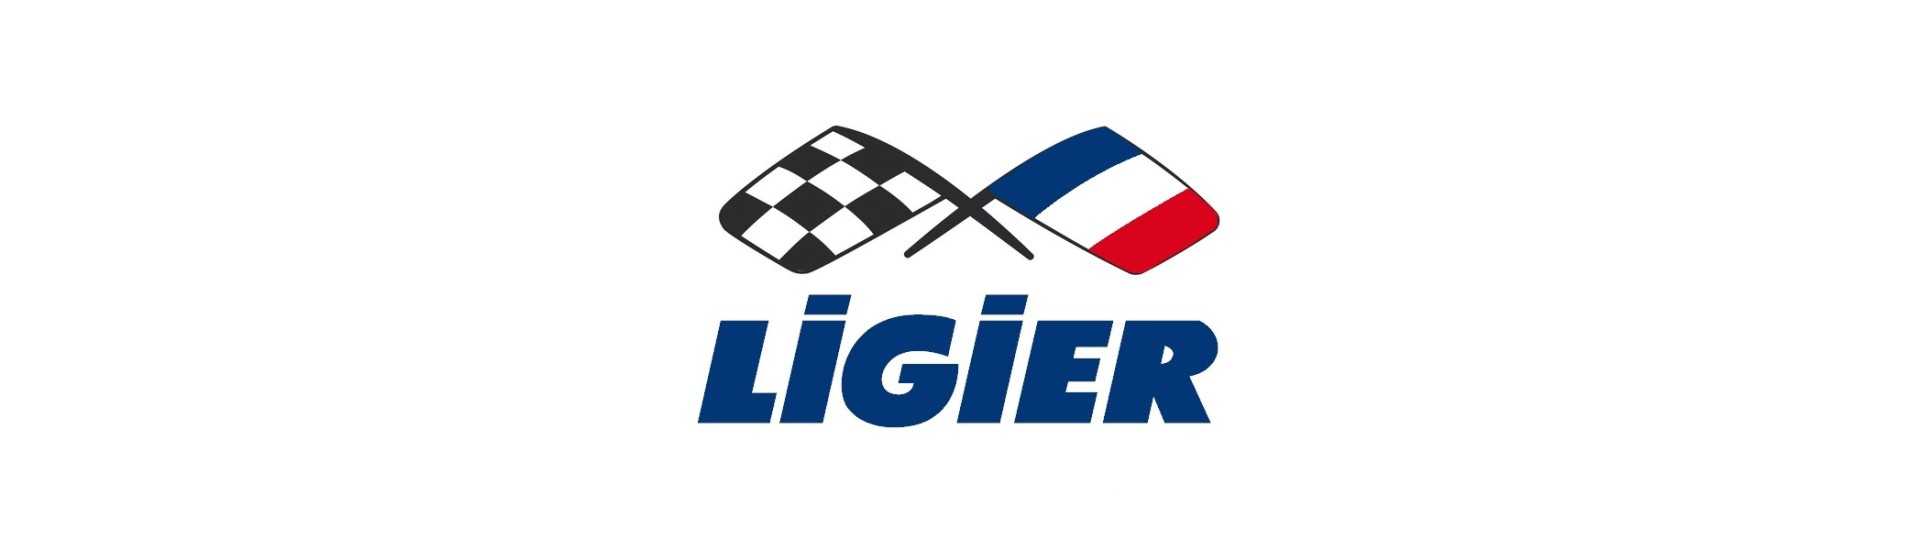 Silent blocco radiatore al miglior prezzo auto senza permesso Ligier